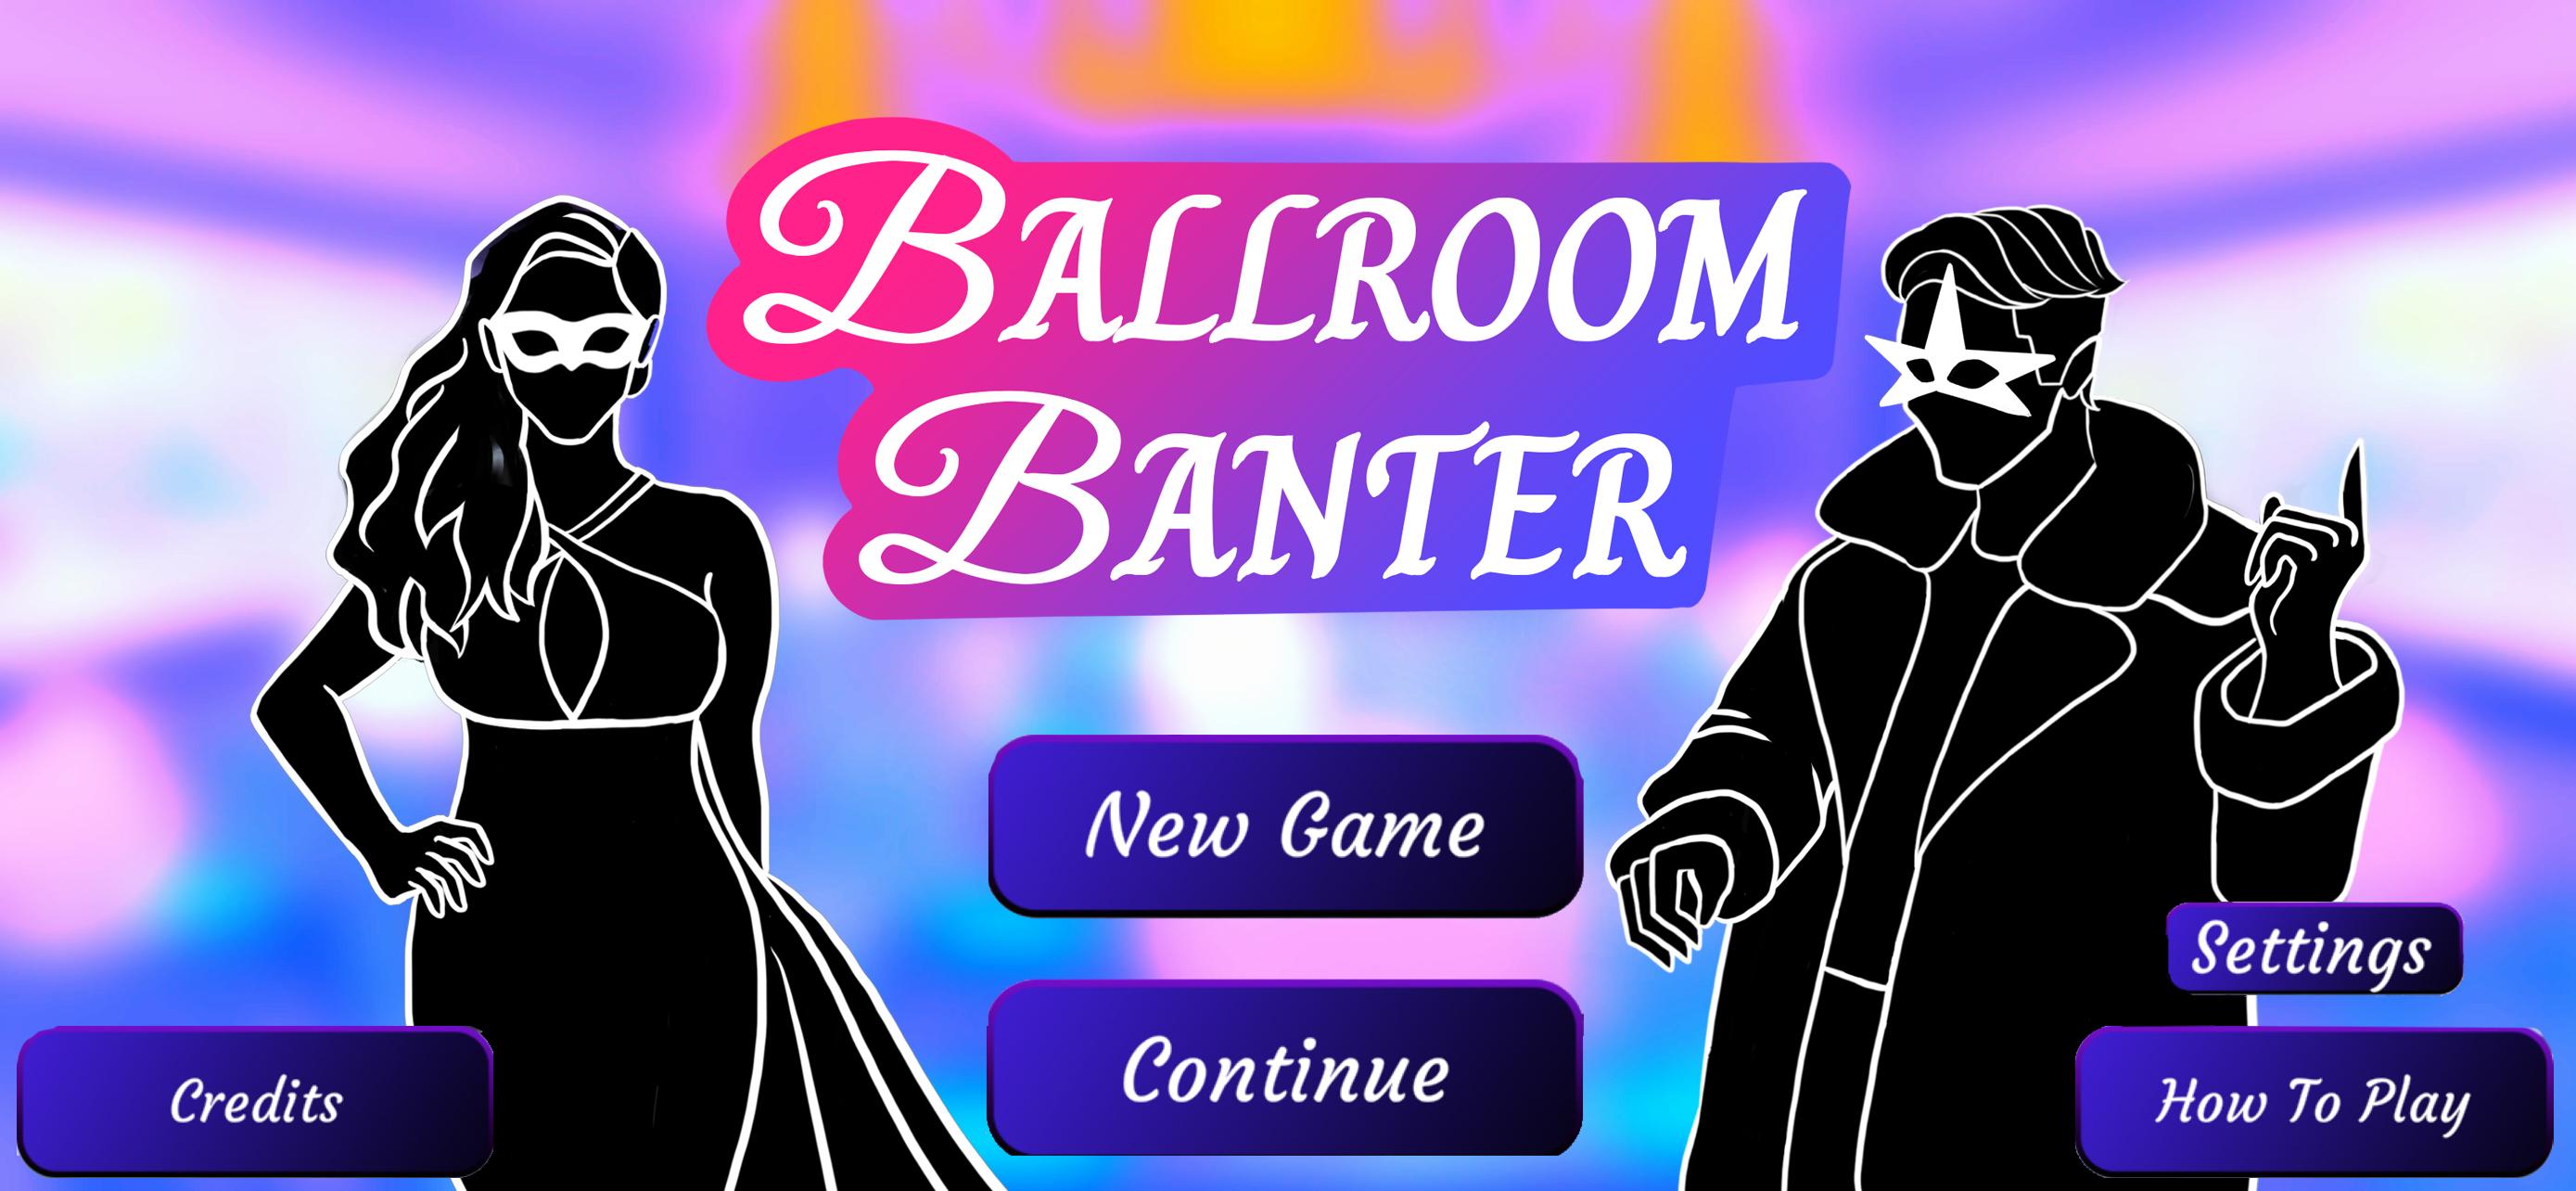 Ballroom Banter 1.04 Screenshot 1